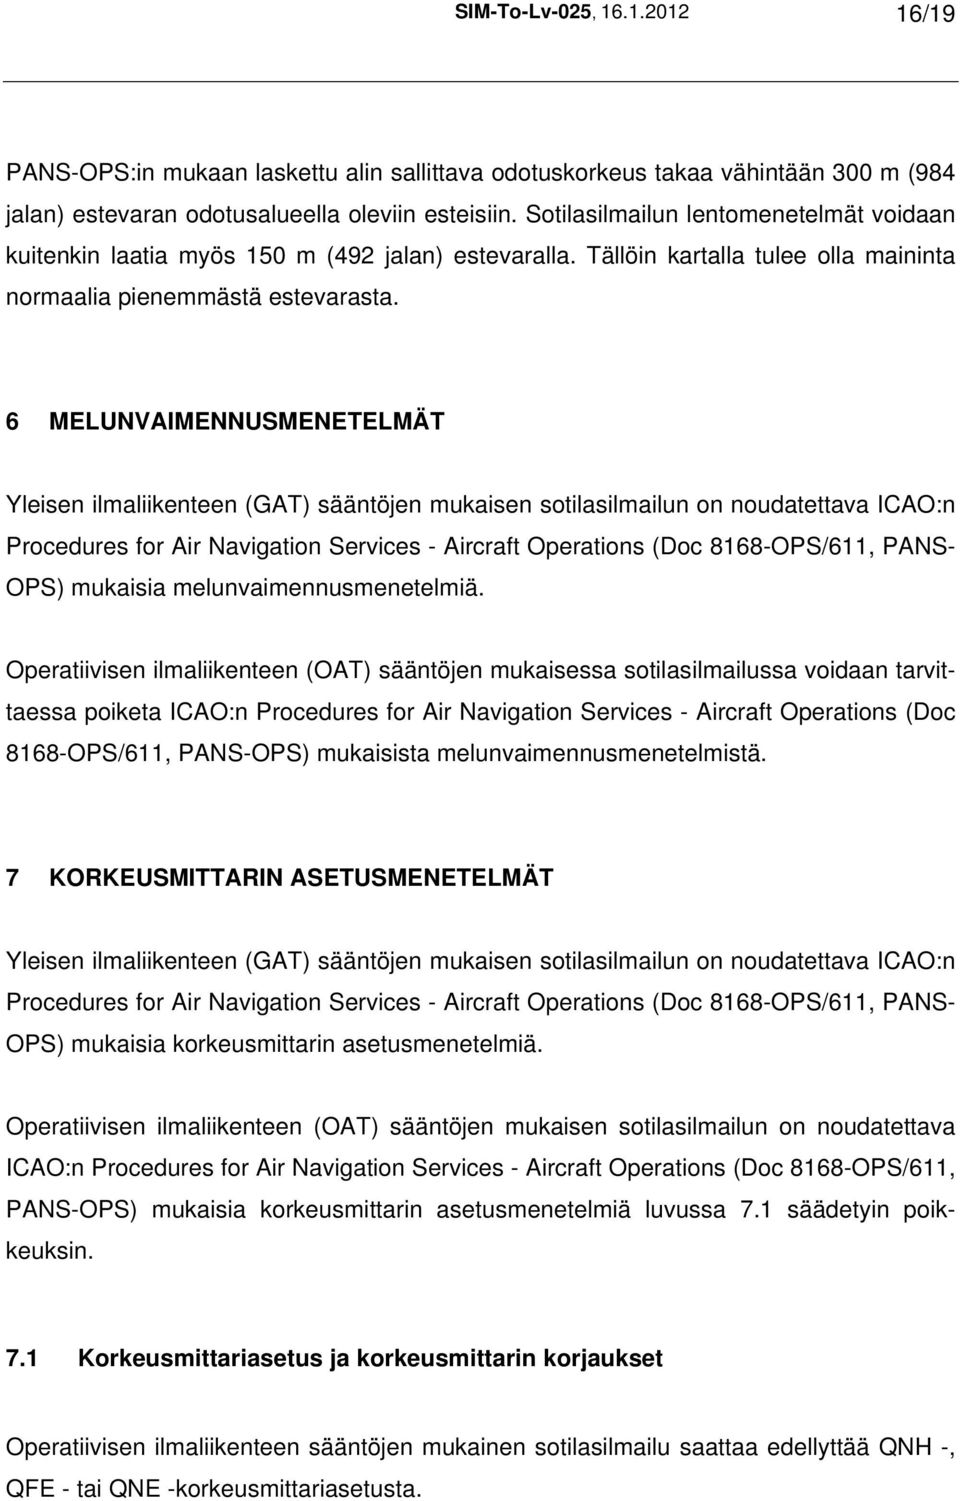 6 MELUNVAIMENNUSMENETELMÄT Yleisen ilmaliikenteen (GAT) sääntöjen mukaisen sotilasilmailun on noudatettava ICAO:n Procedures for Air Navigation Services - Aircraft Operations (Doc 8168-OPS/611, PANS-